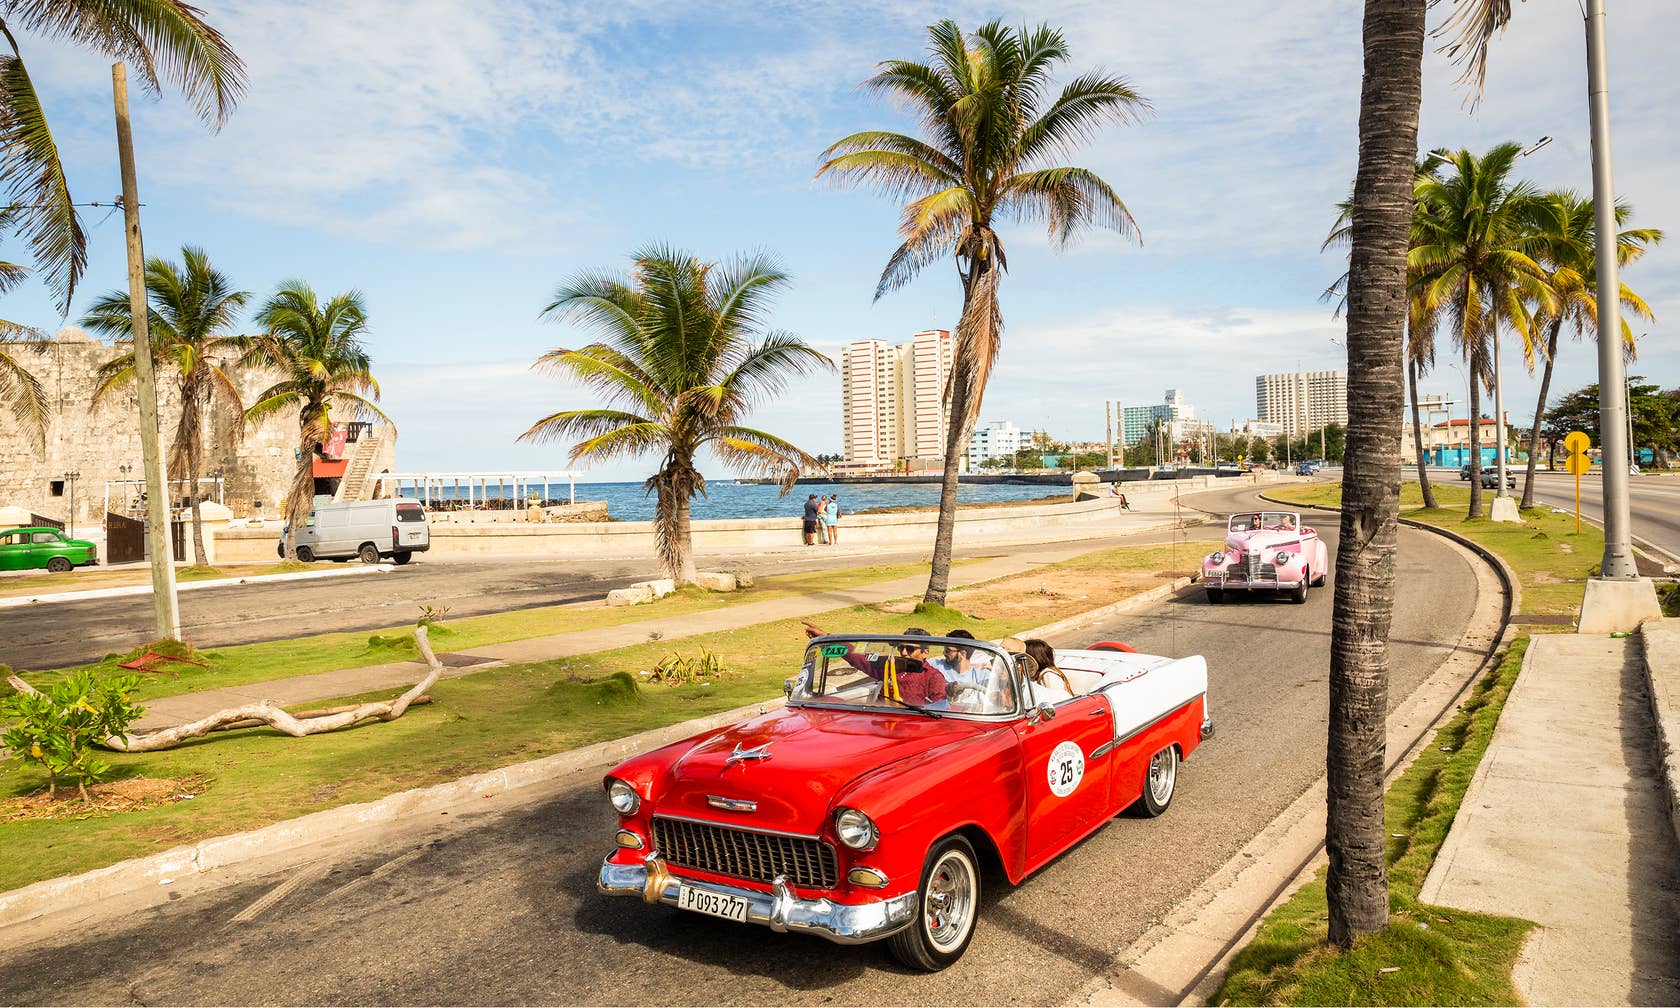 Bérbeadó nyaralók itt: Kuba